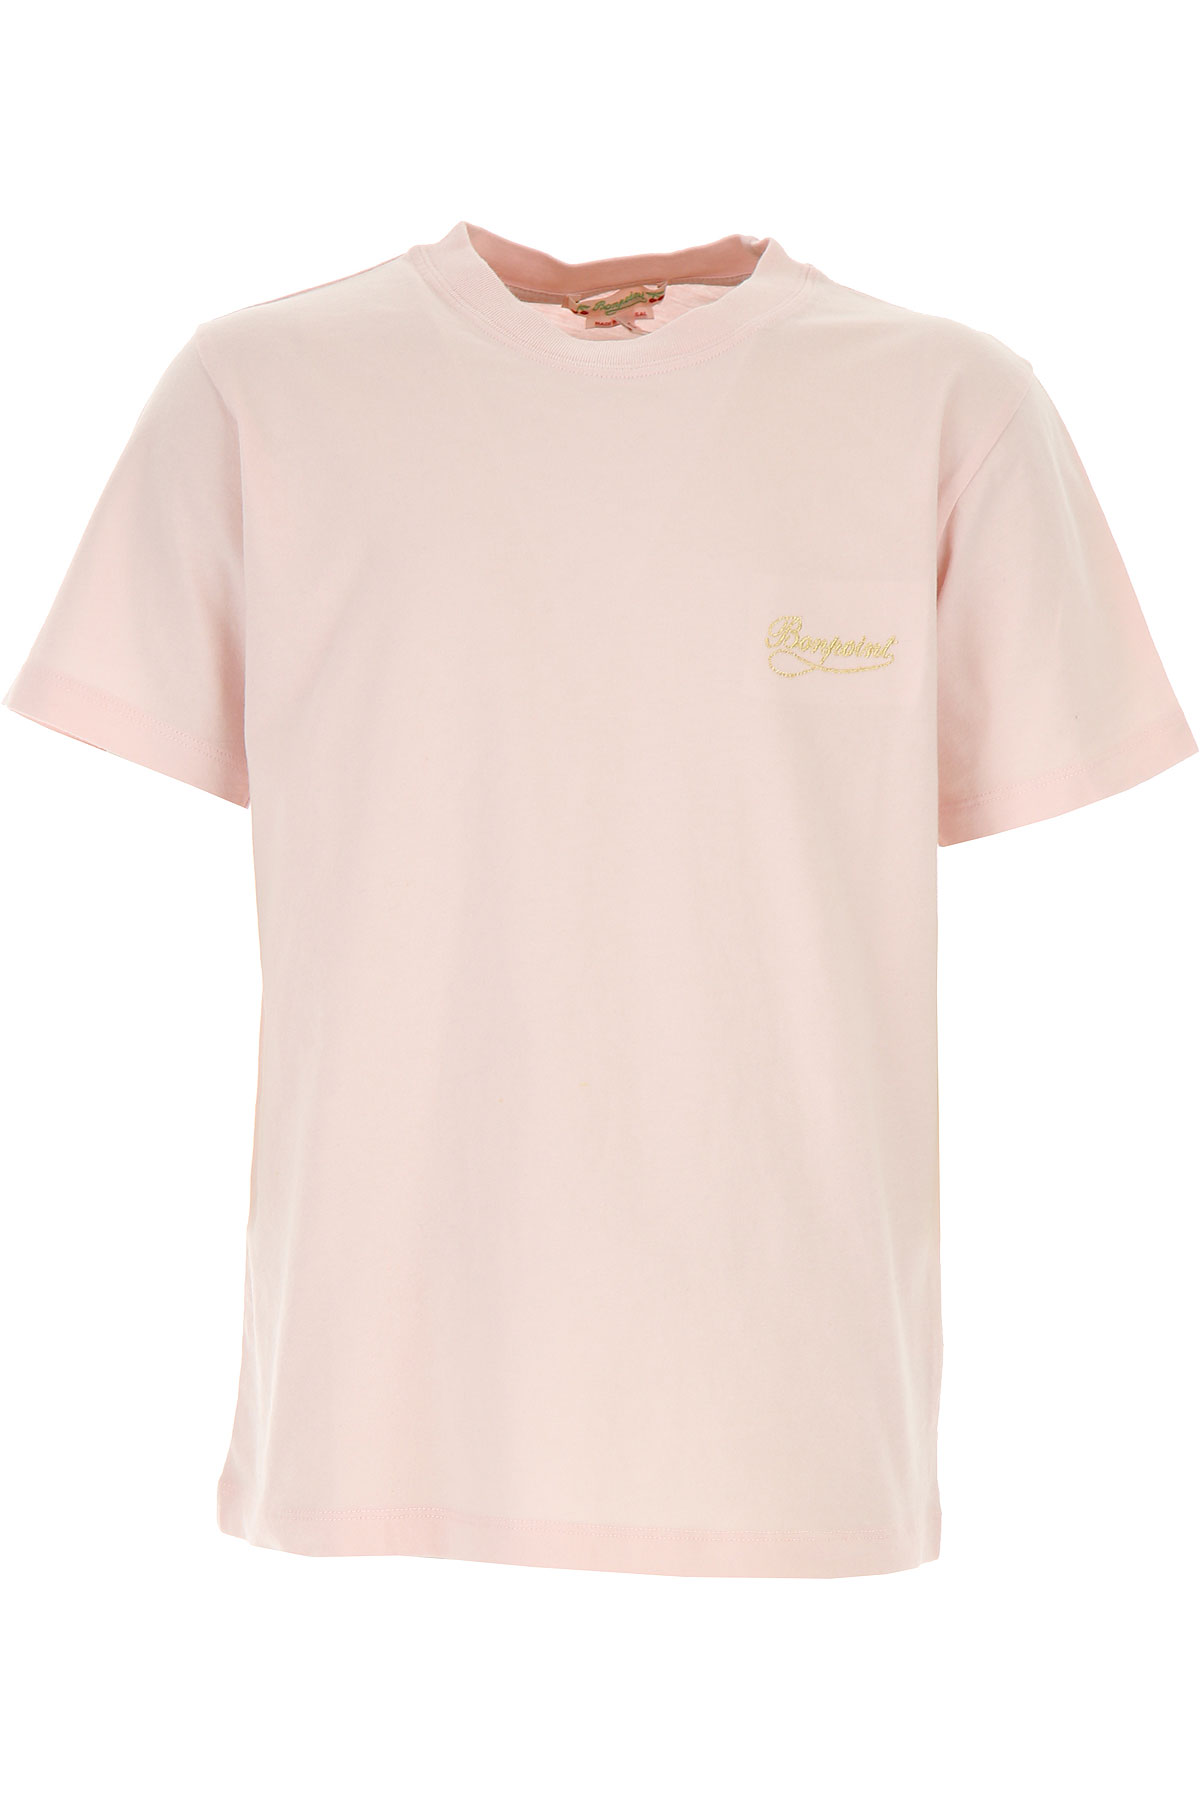 Bonpoint Kinder T-Shirt für Mädchen Günstig im Sale, Pink, Baumwolle, 2017, 10Y 12Y 4Y 6Y 8Y